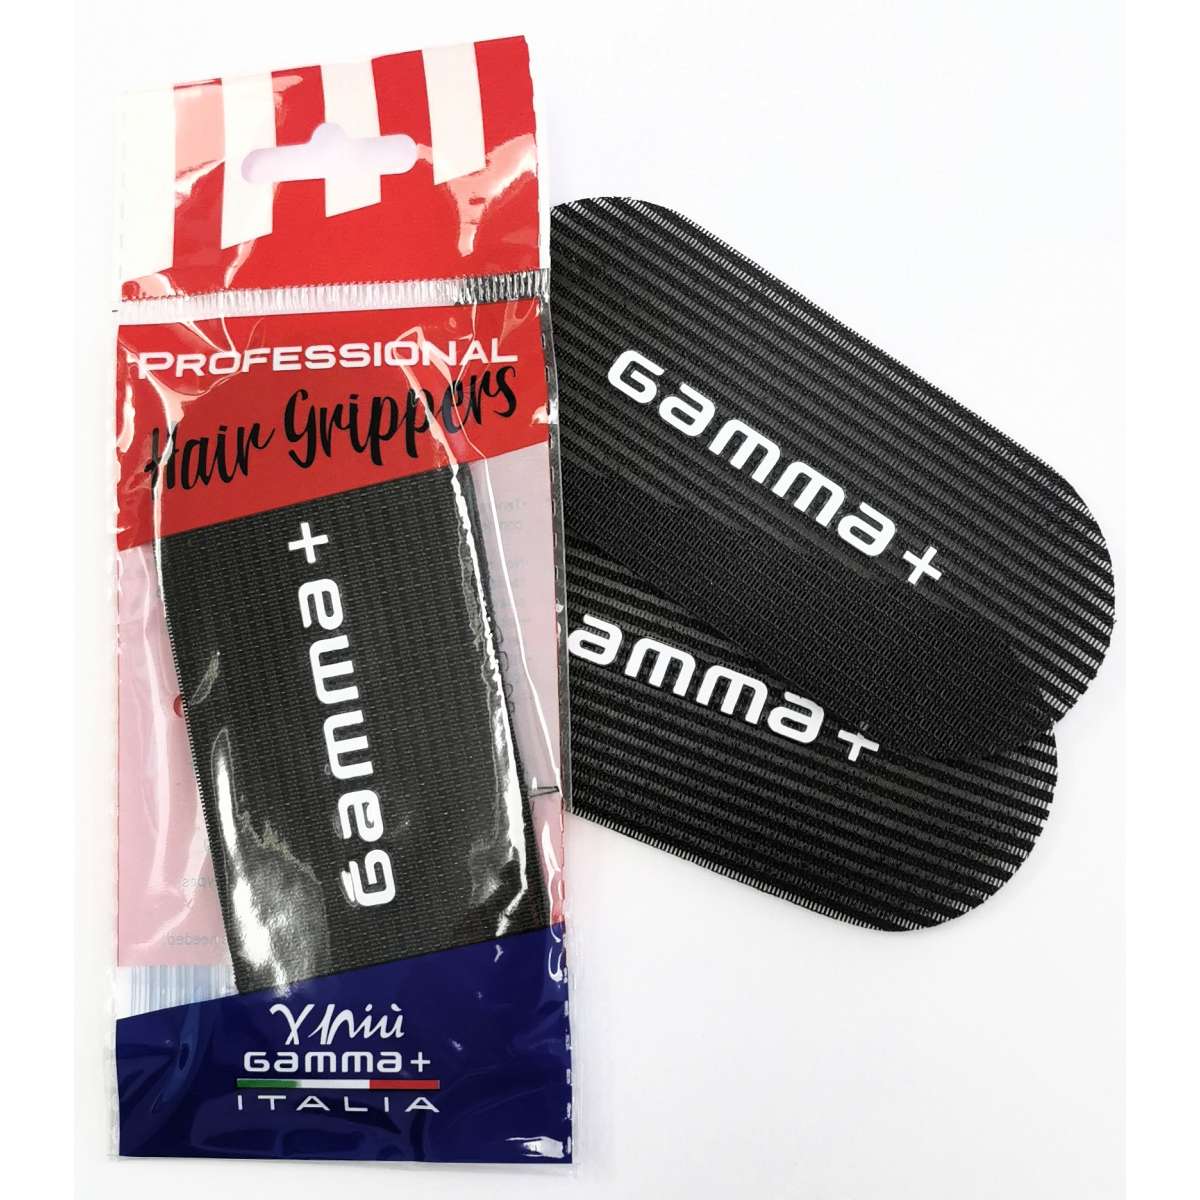 *Gamma+ Hair Grippers - 2 Piece Velcro Set